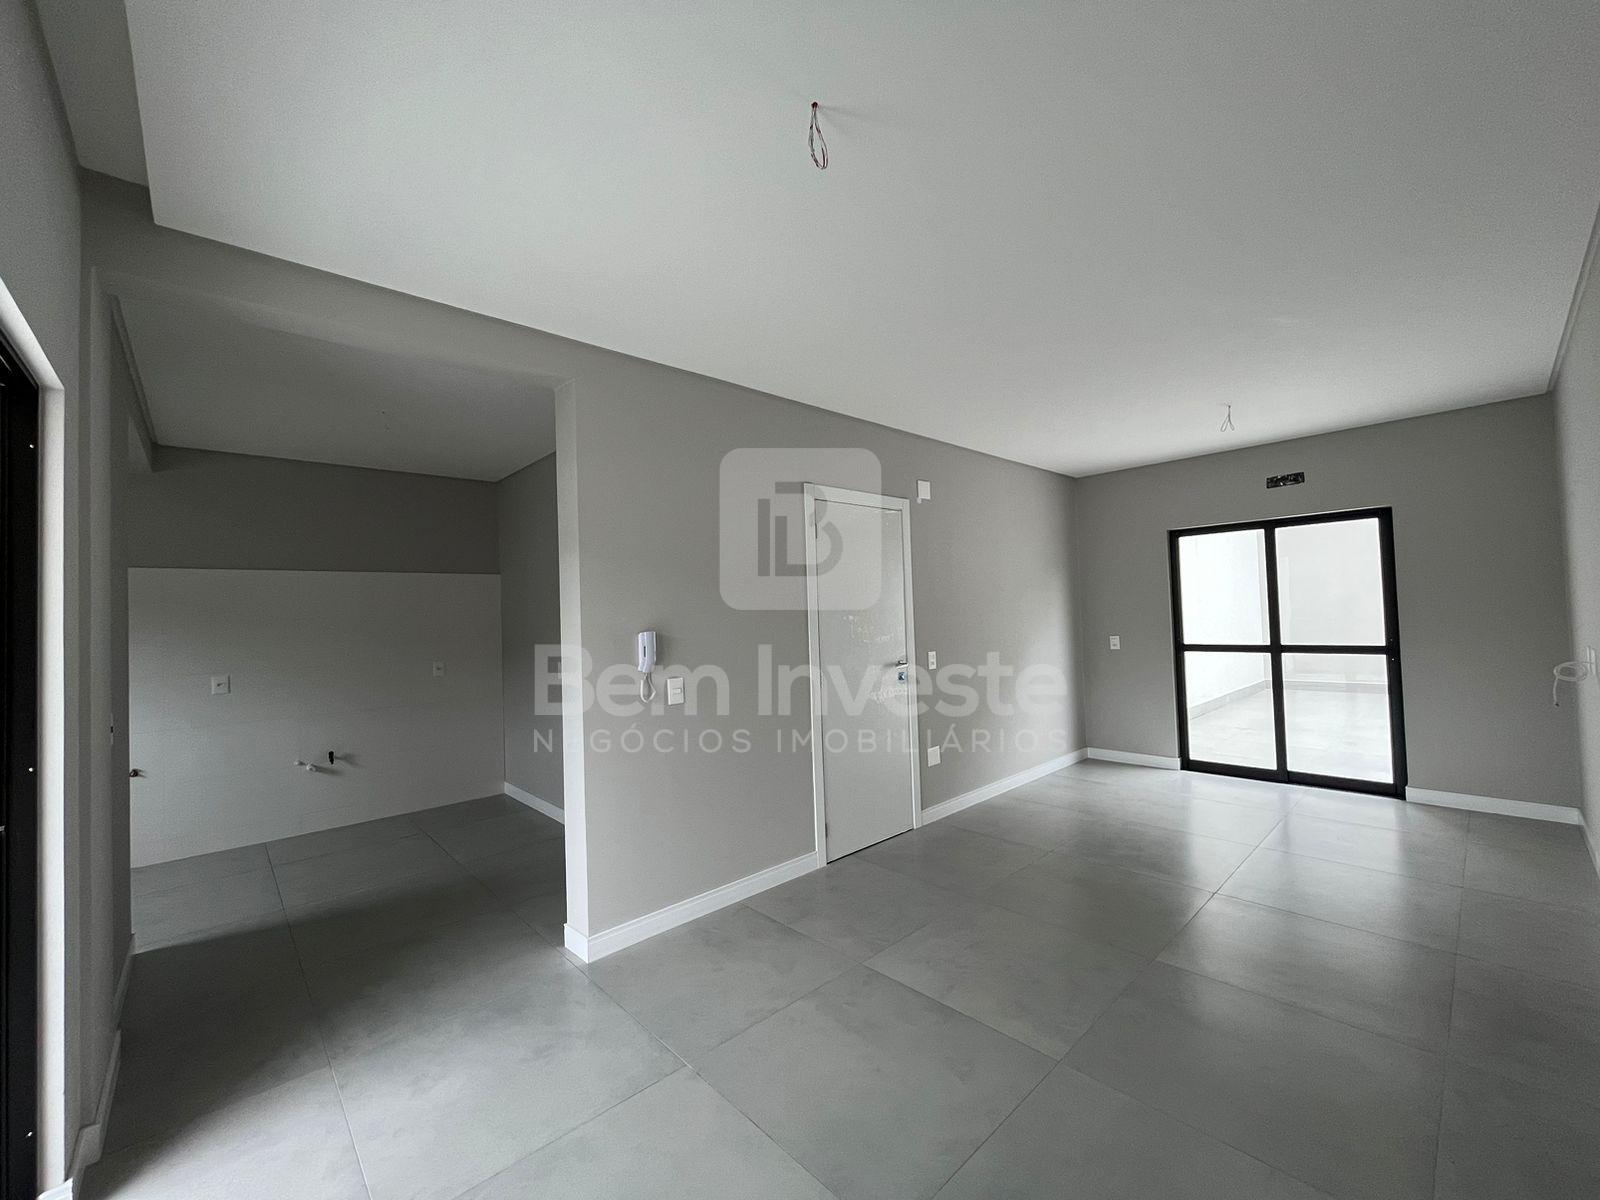 Apartamento com 2 dormitórios à venda,72.24 m , BALNEARIO CAMB...